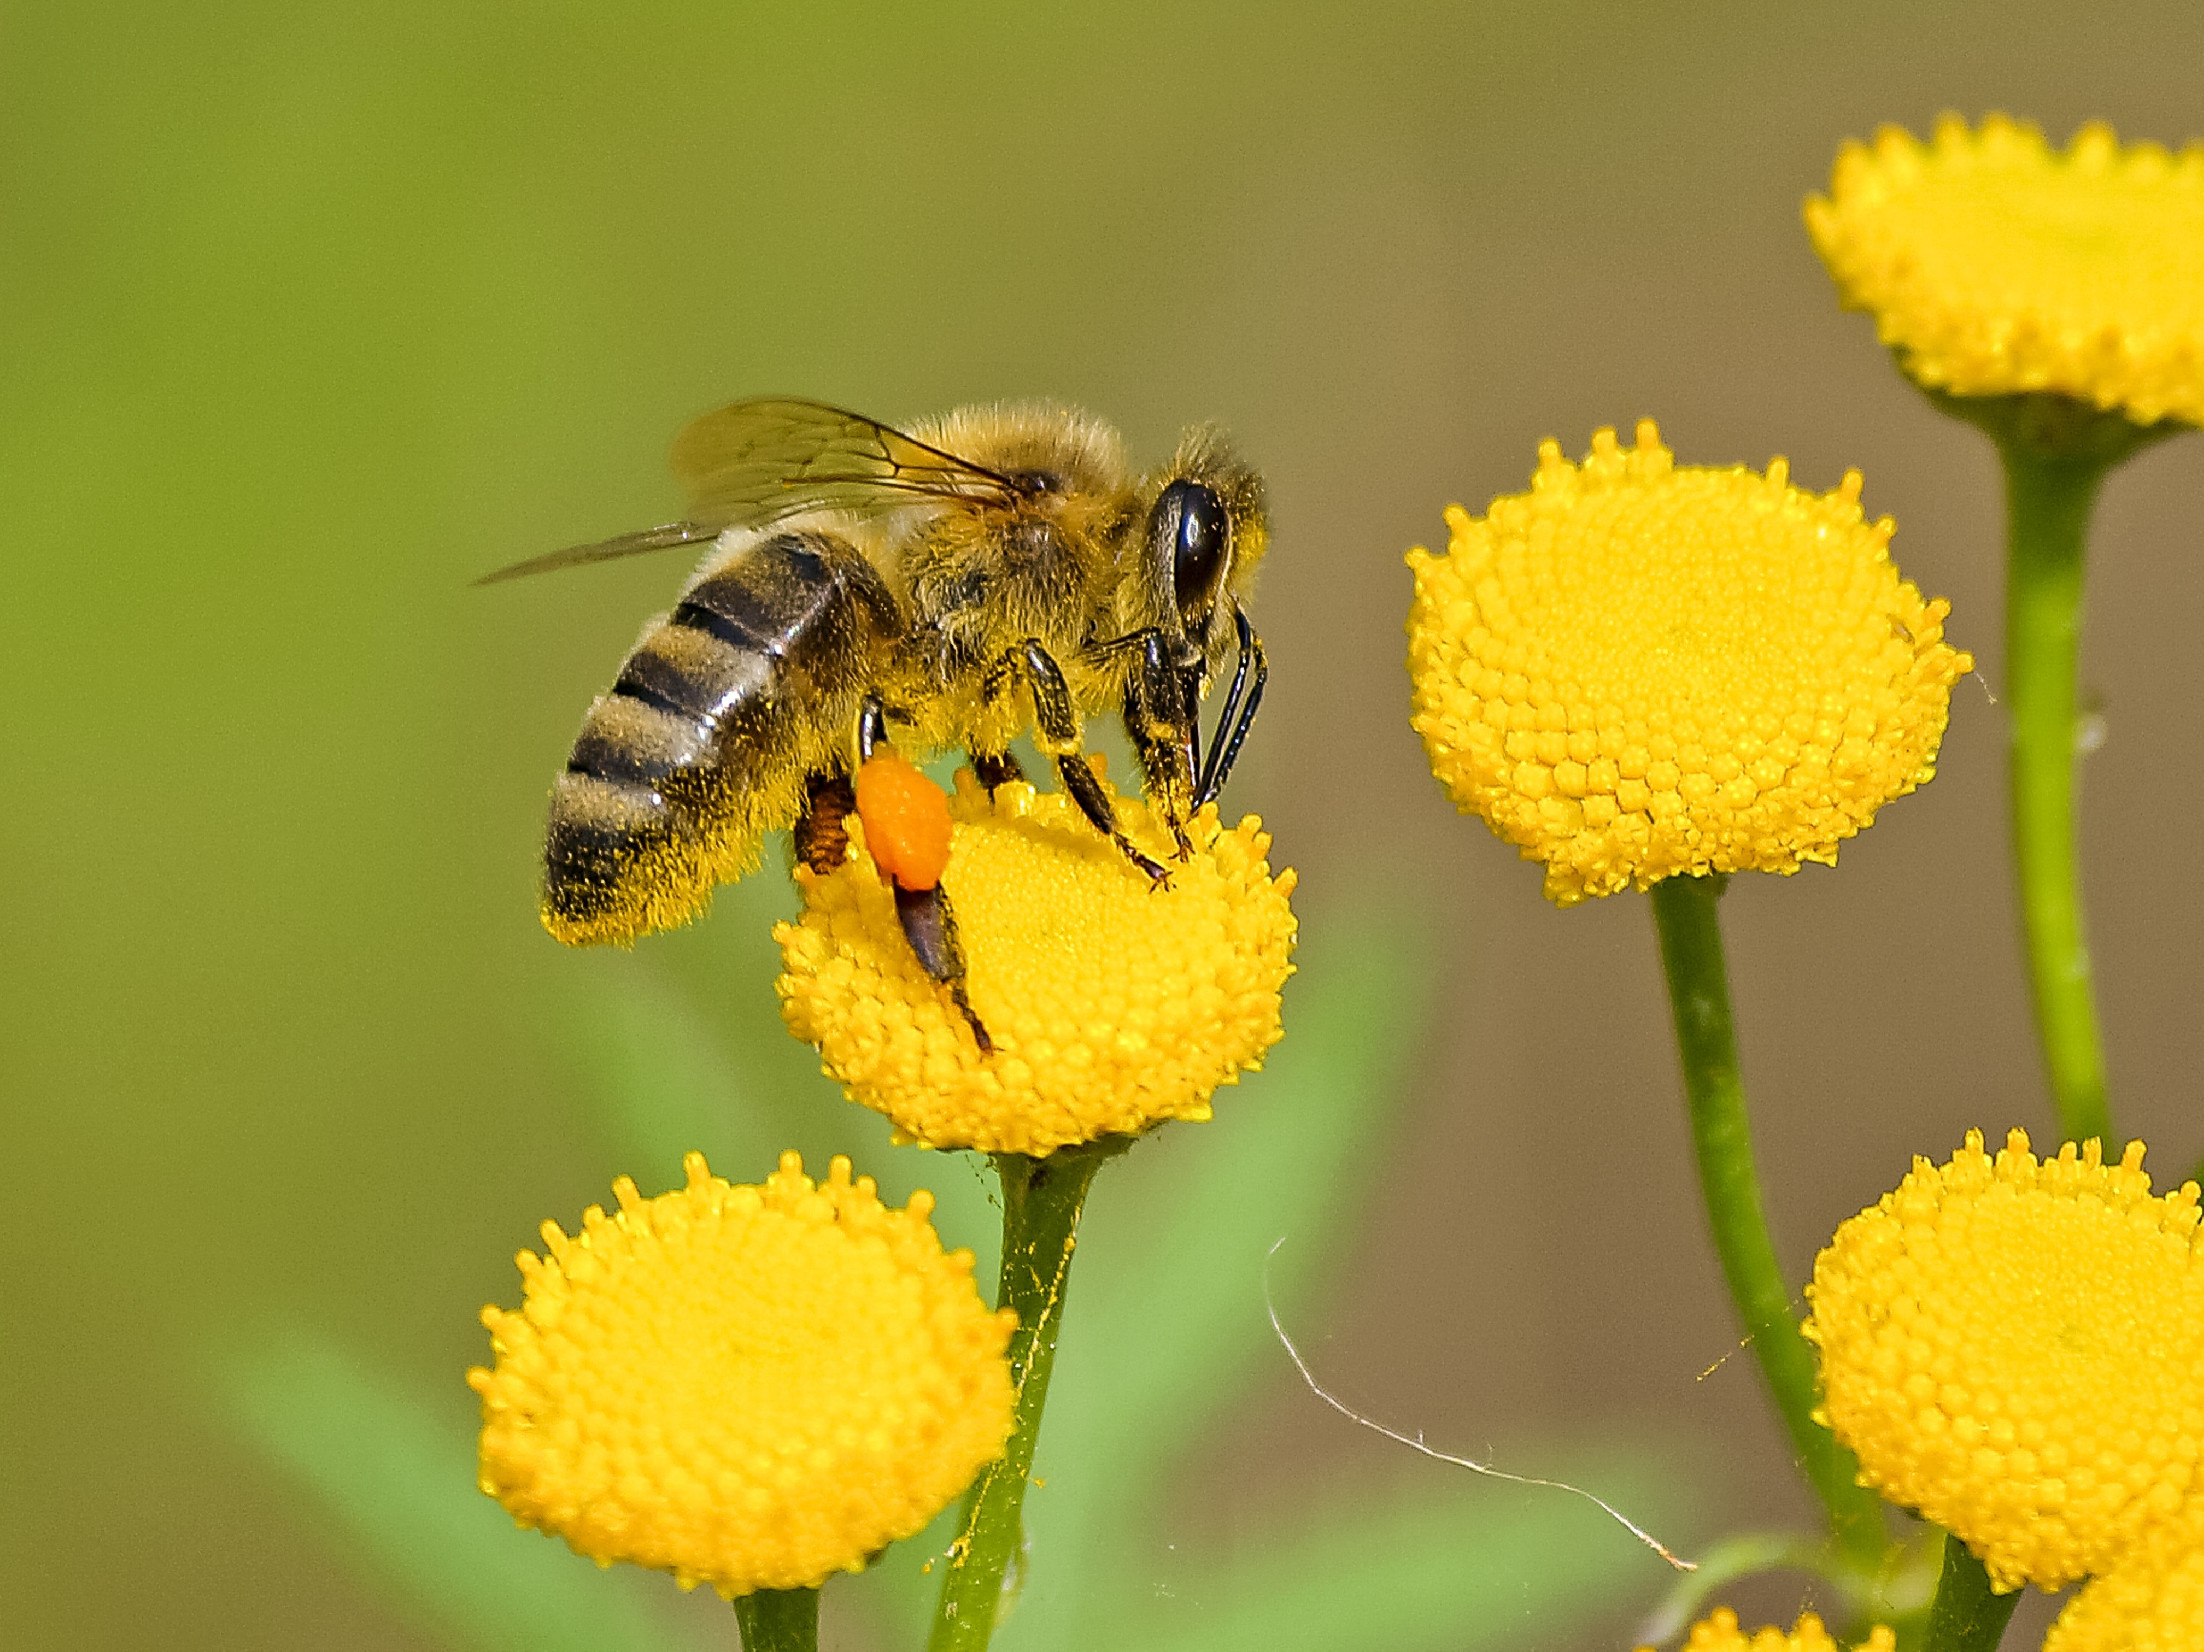 Európában betiltották, de máshová extrém mennyiségben lehet exportálni a méhgyilkos növényvédőszereket